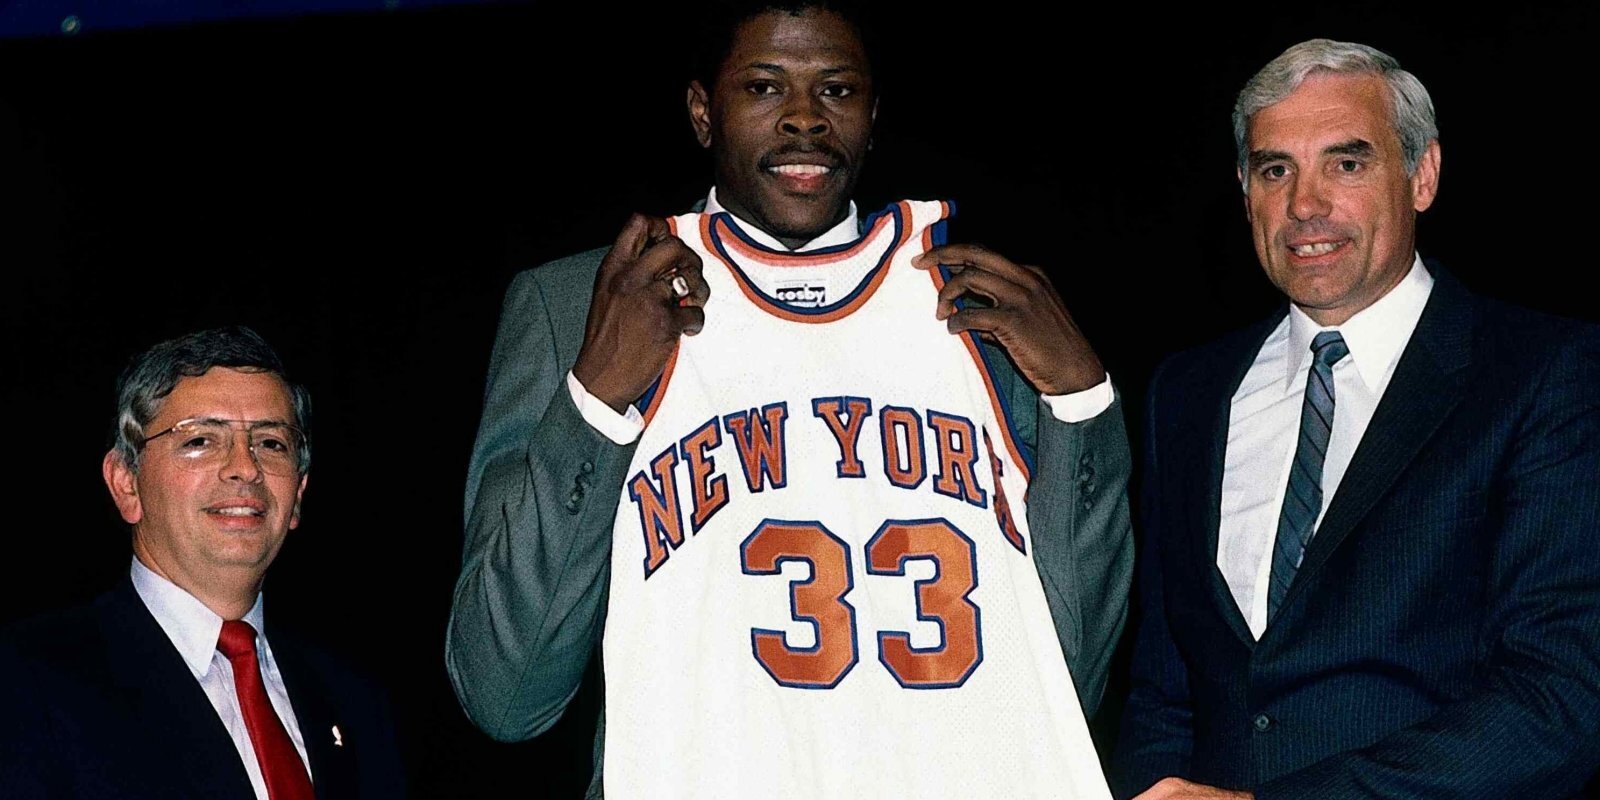 Atdzesēta aploksne un Jūings Ņujorkā: viltīgākā afēra NBA vēsturē?